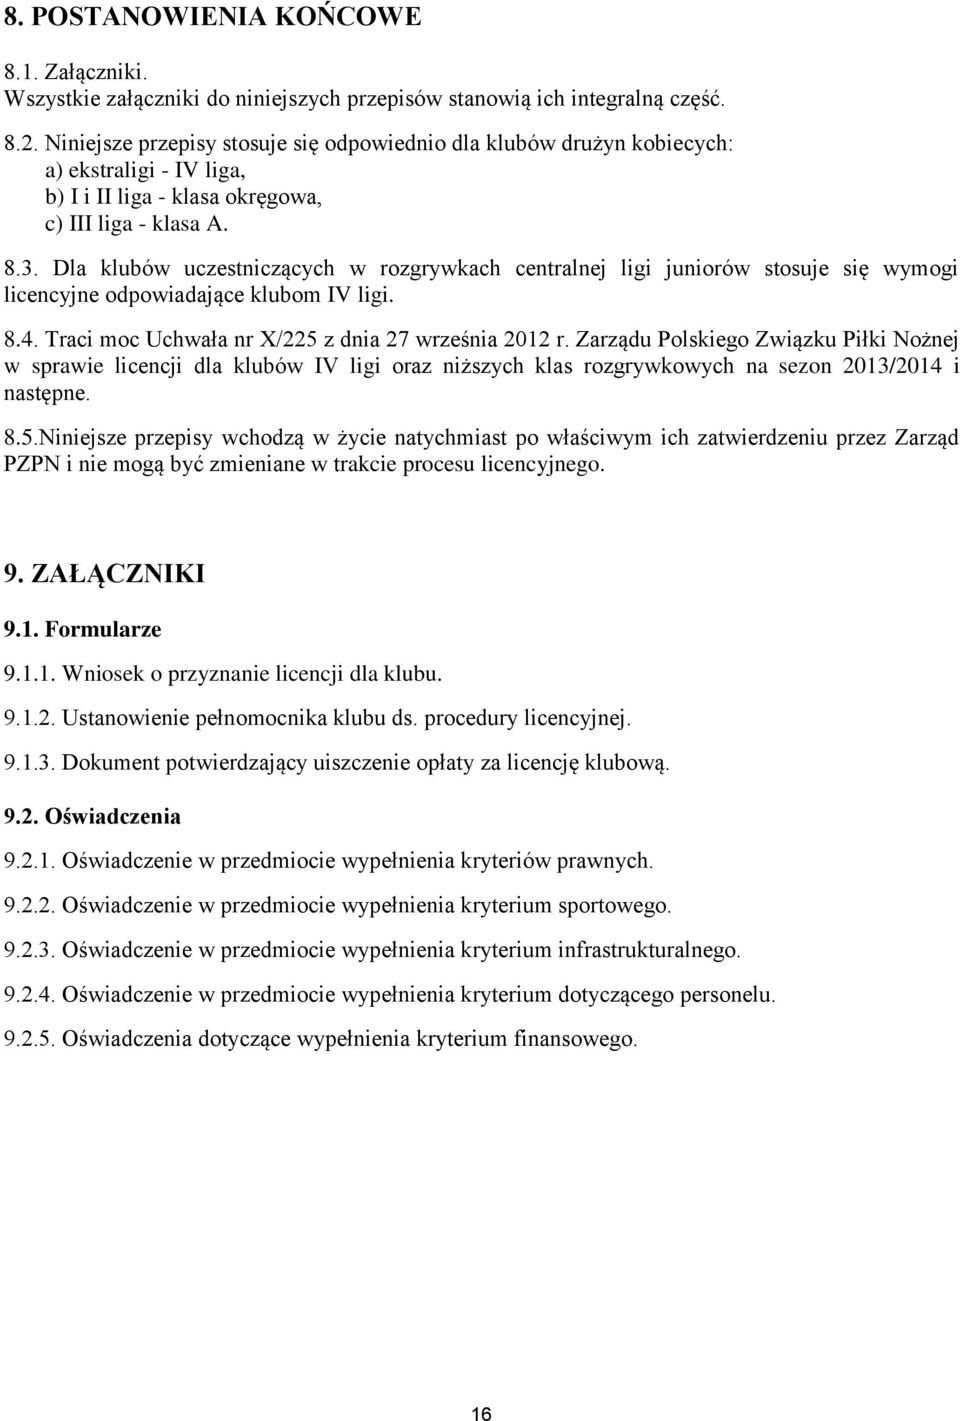 Dla klubów uczestniczących w rozgrywkach centralnej ligi juniorów stosuje się wymogi licencyjne odpowiadające klubom IV ligi. 8.4. Traci moc Uchwała nr X/225 z dnia 27 września 2012 r.